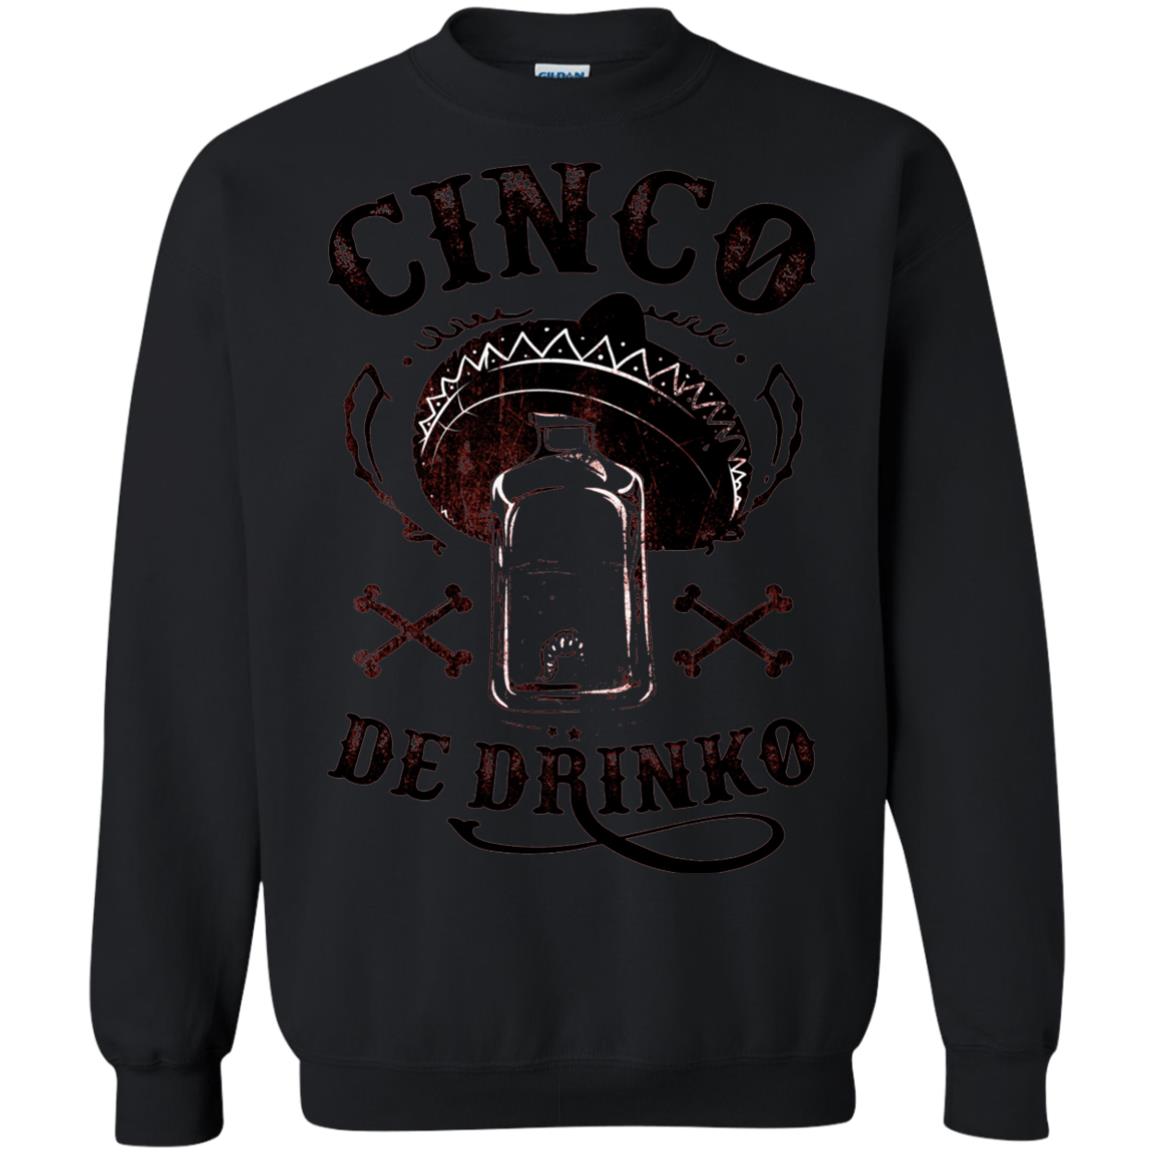 Badass Cinco De Drinko T-shirt Funny Cinco De Mayo